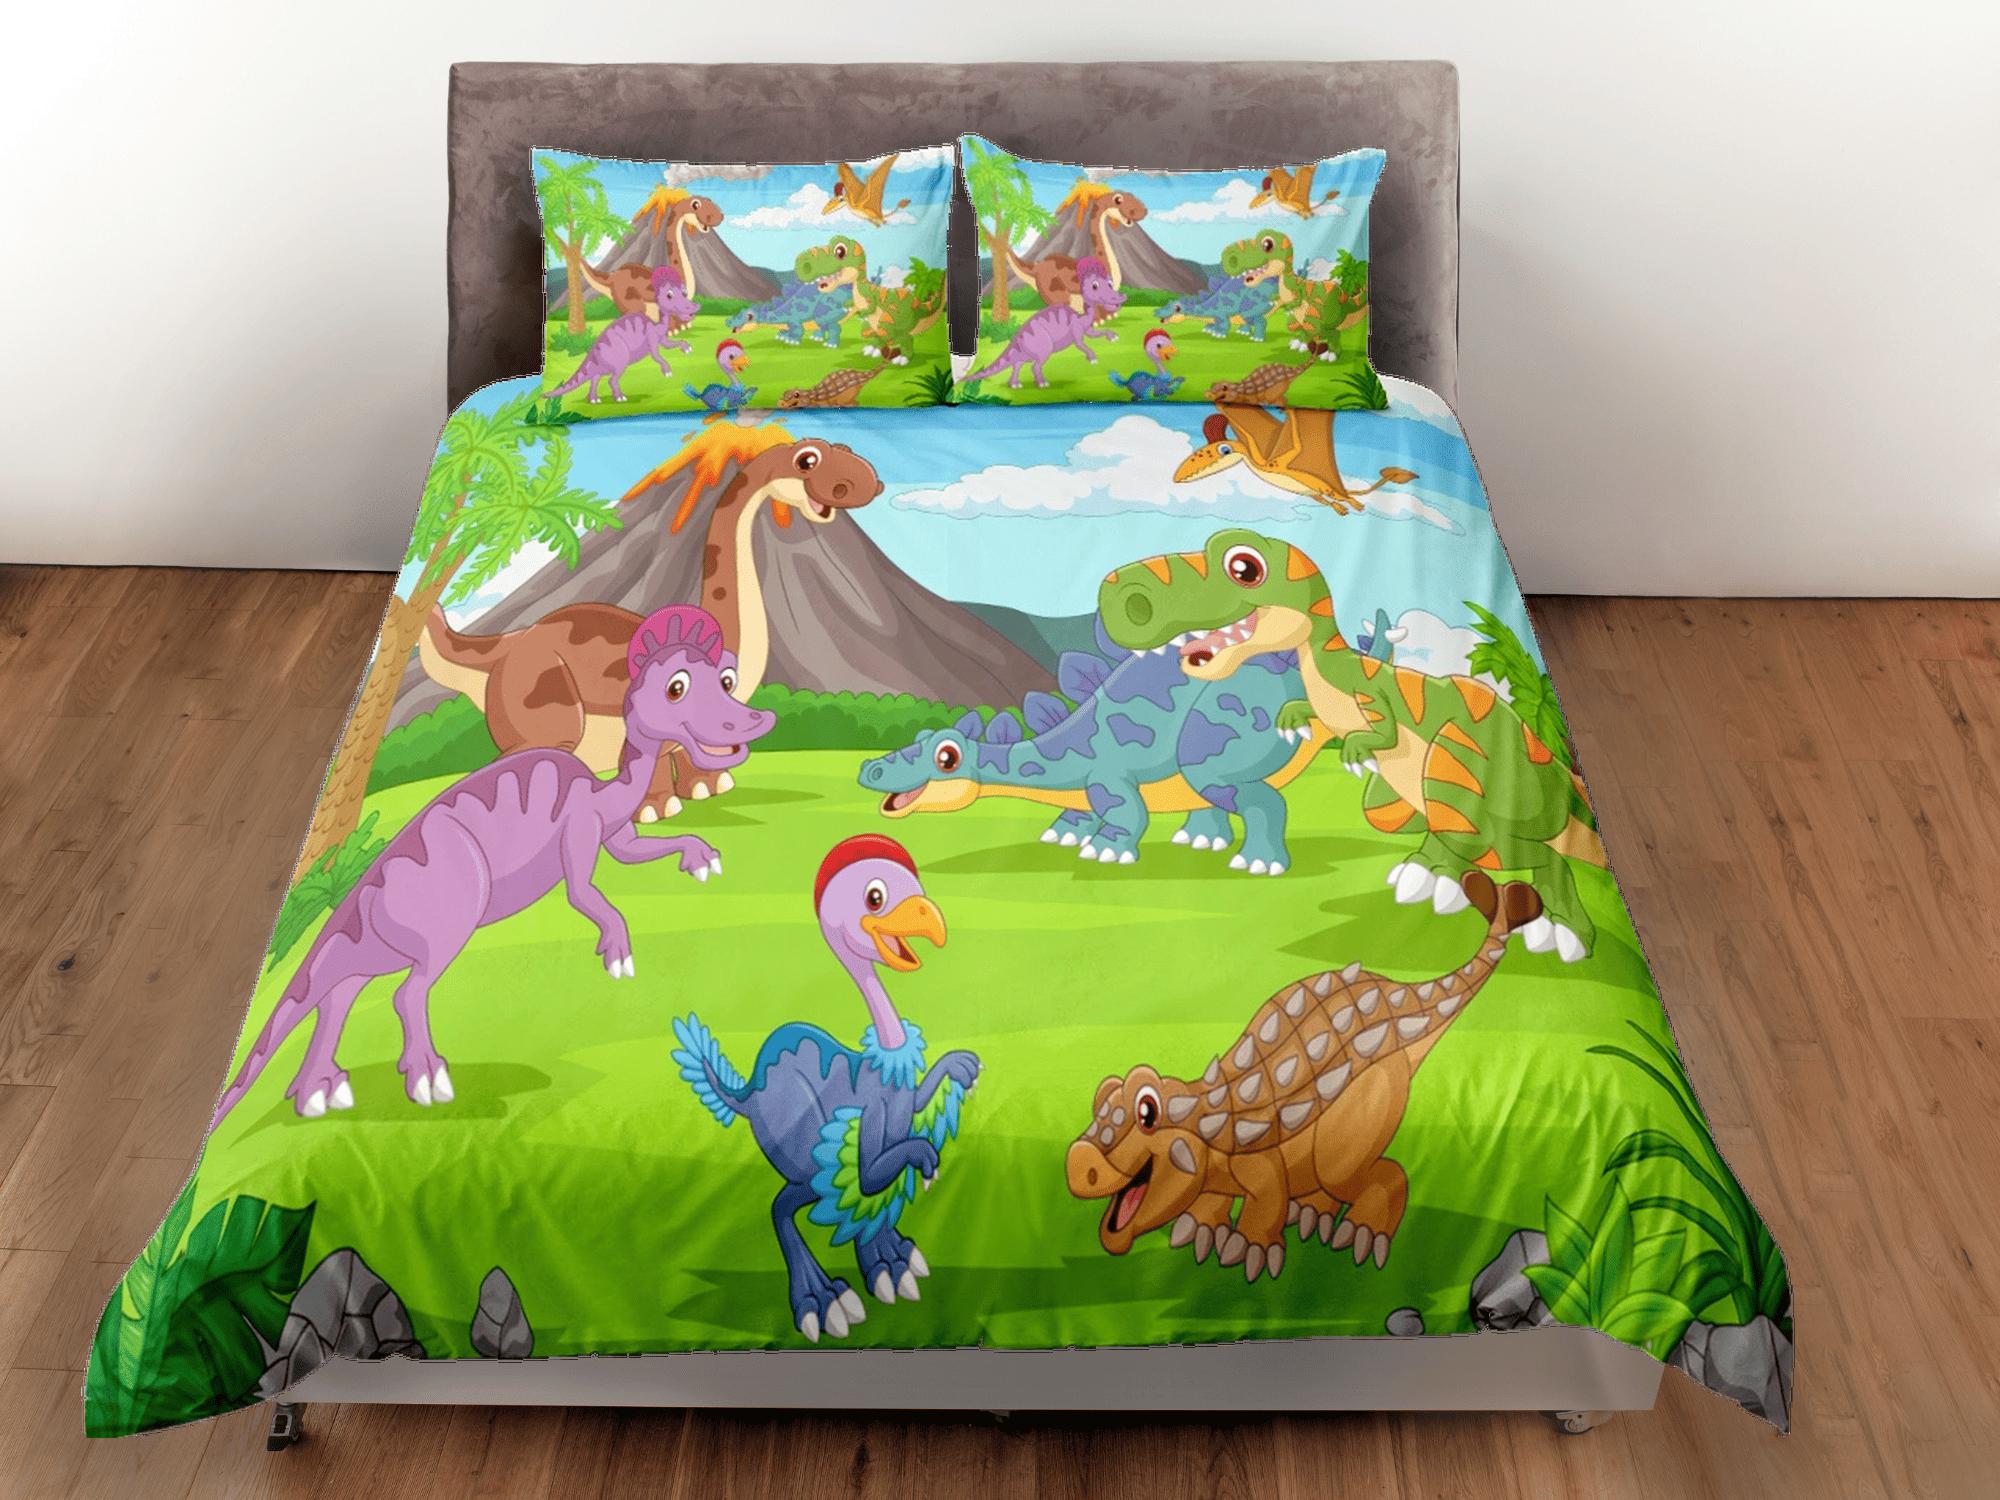 daintyduvet Volcano dinosaur bedding, kids bedding full, cute duvet cover set, dinosaur nursery bed decor, colorful bedding, baby dinosaur, toddler